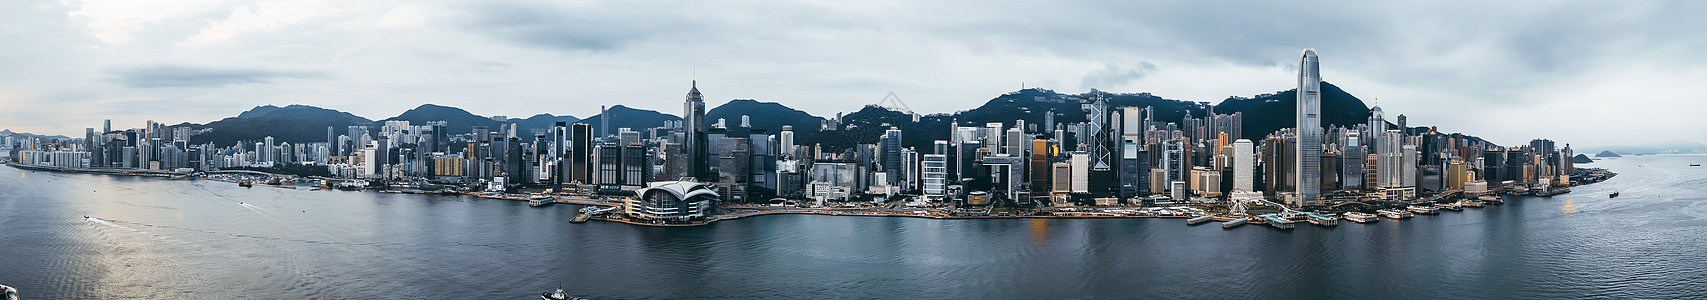 维港香港岛全景背景